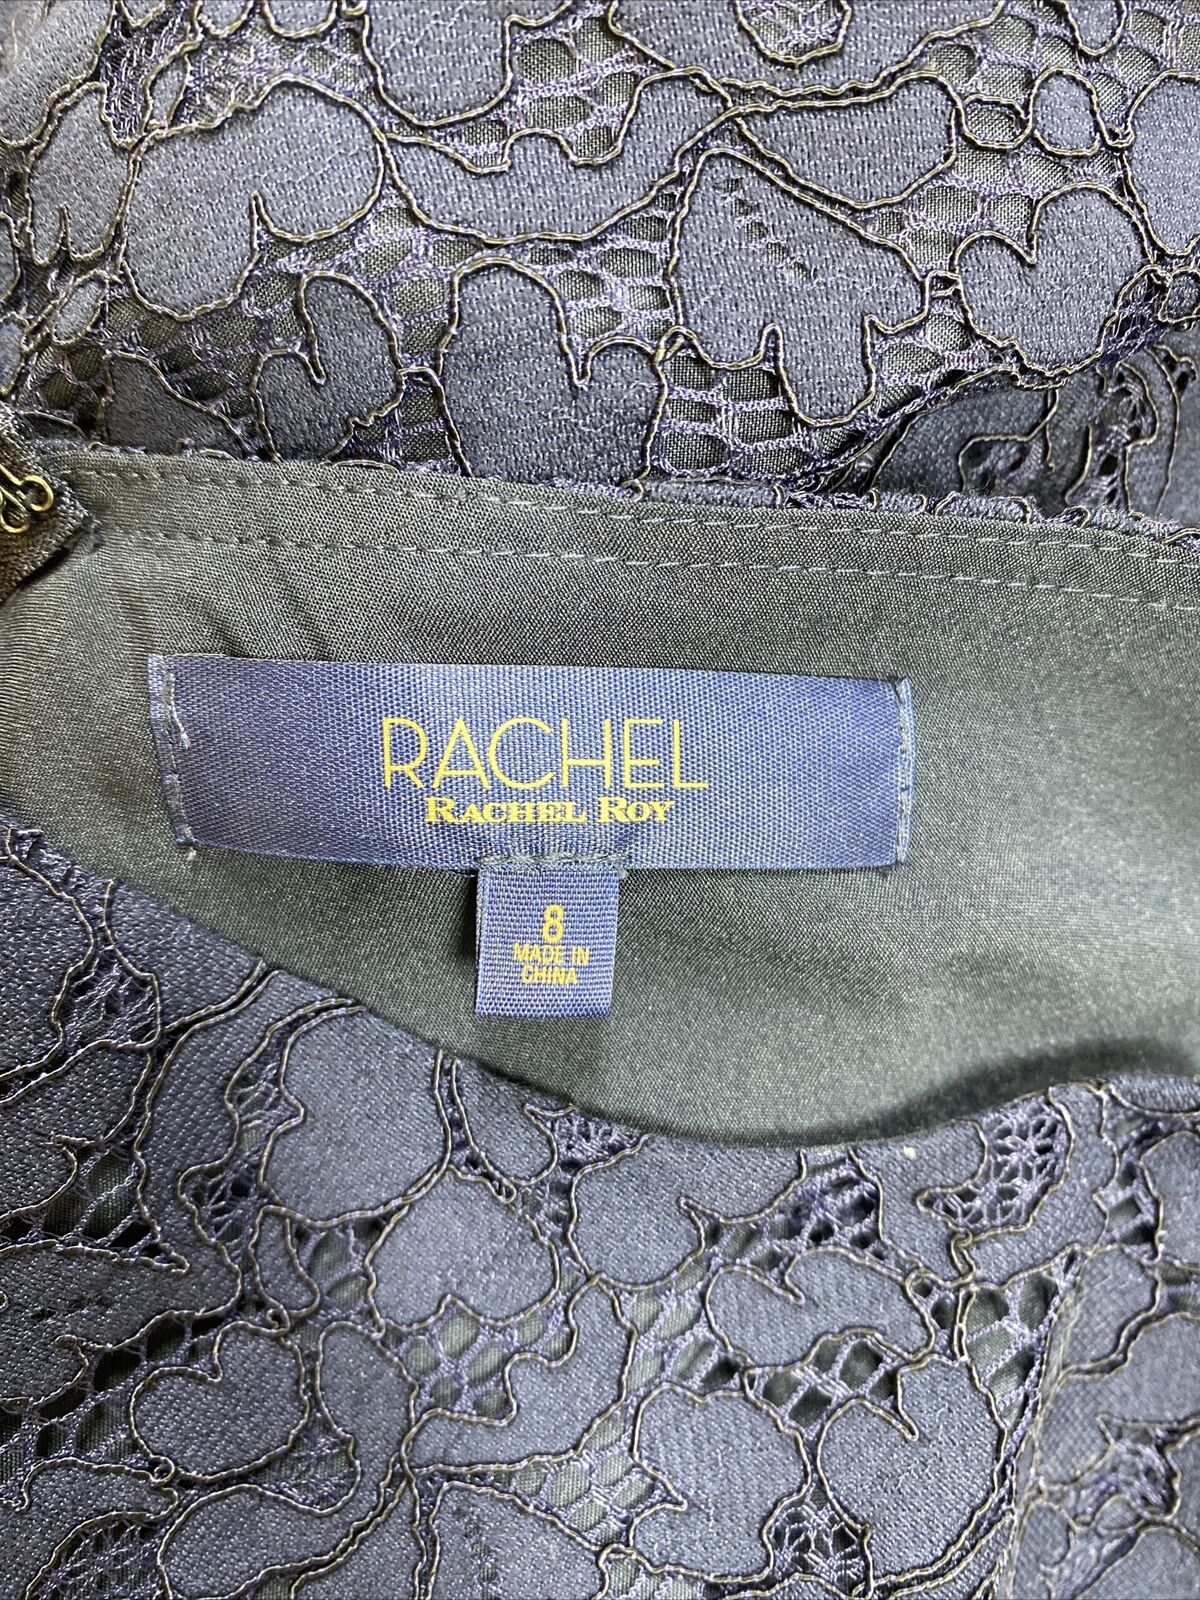 NEW Rachel Roy Women's Navy Blue Lace Side Cutout Sheath Dress - 8